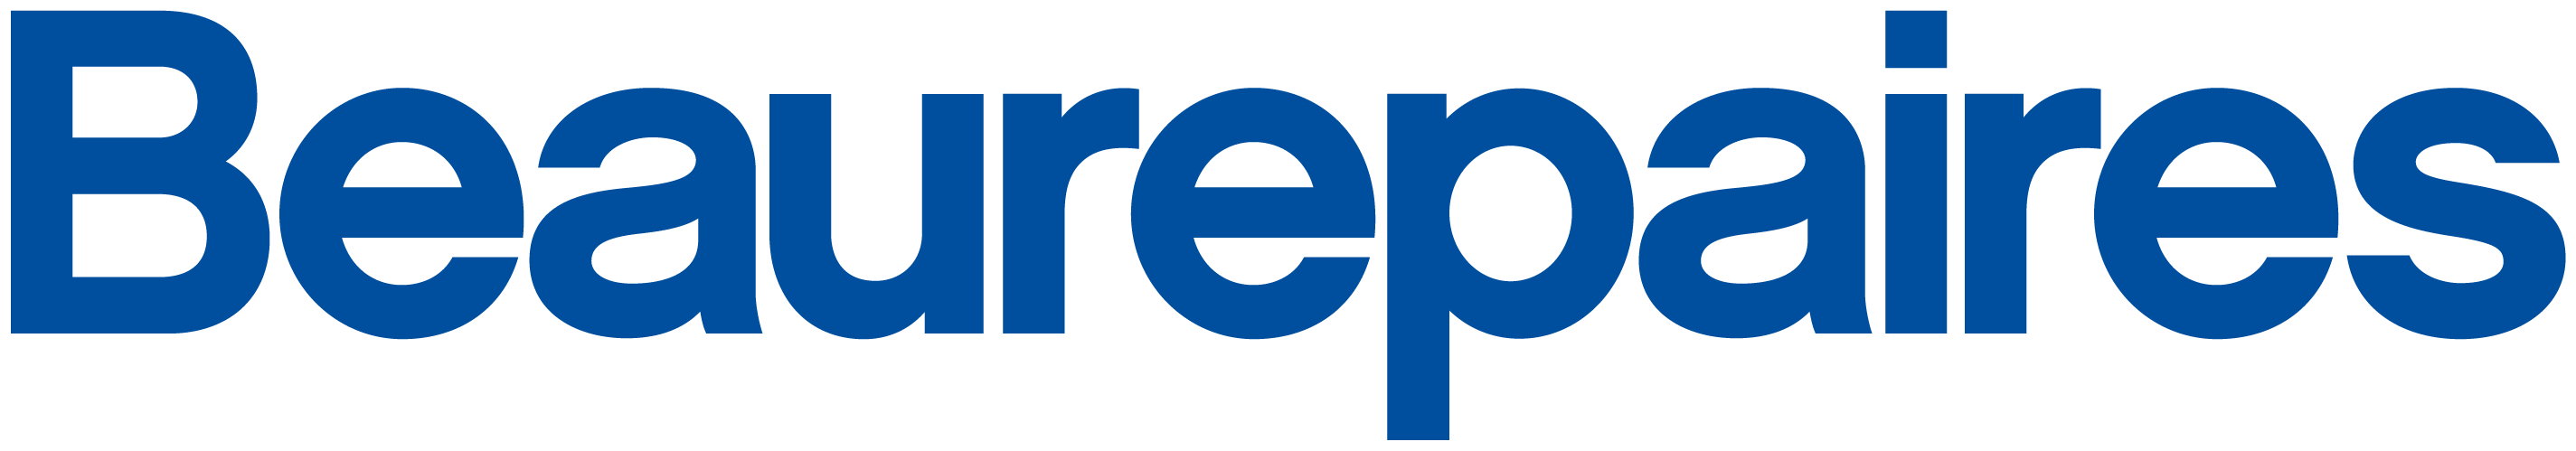 Beaurepairs Logo white and blue